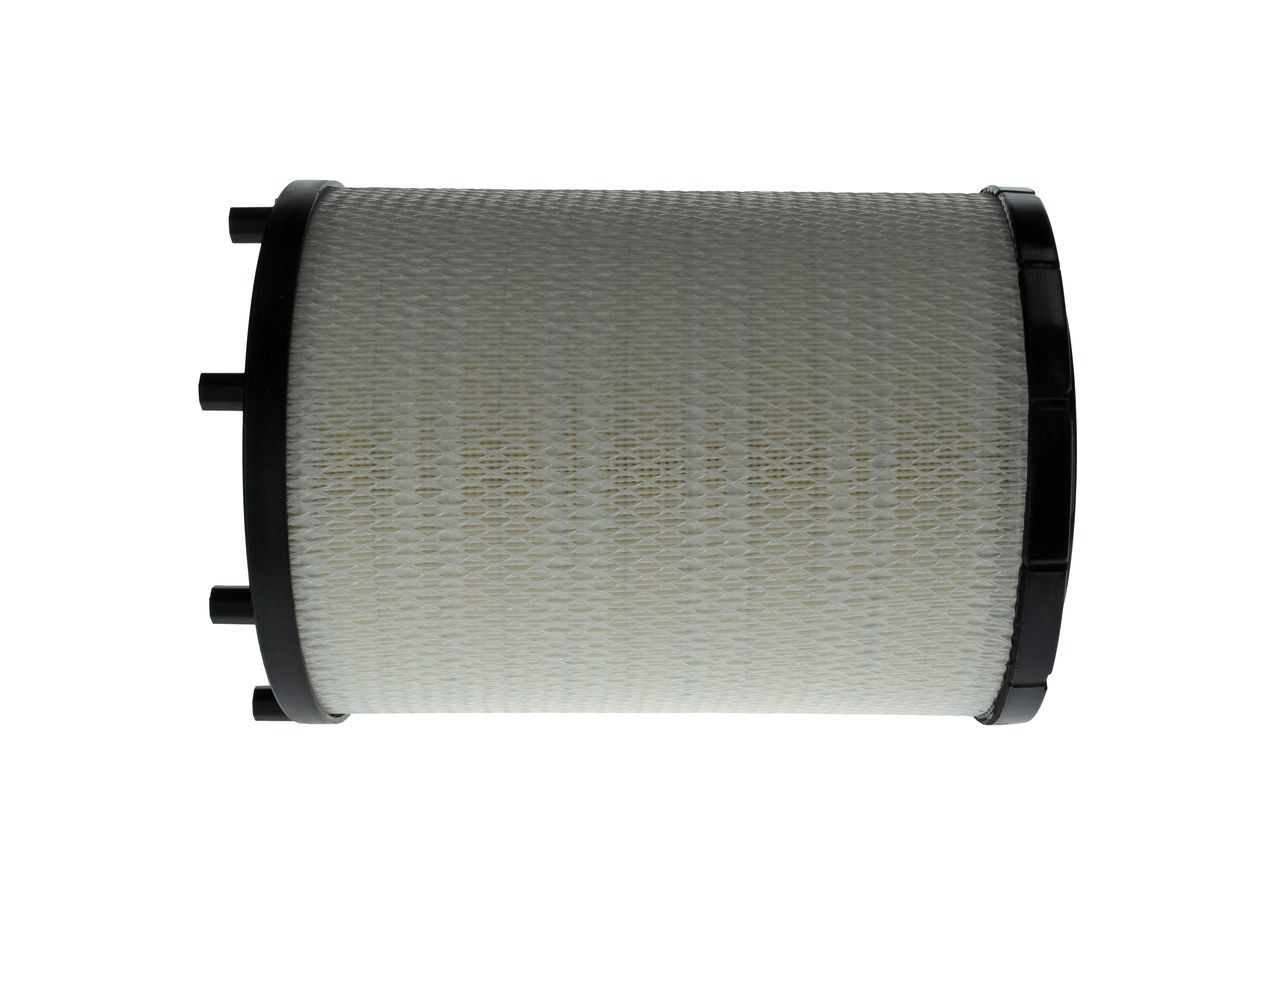 F026400620 Air filter S 0620 BOSCH 435mm, 302mm, Filter Insert